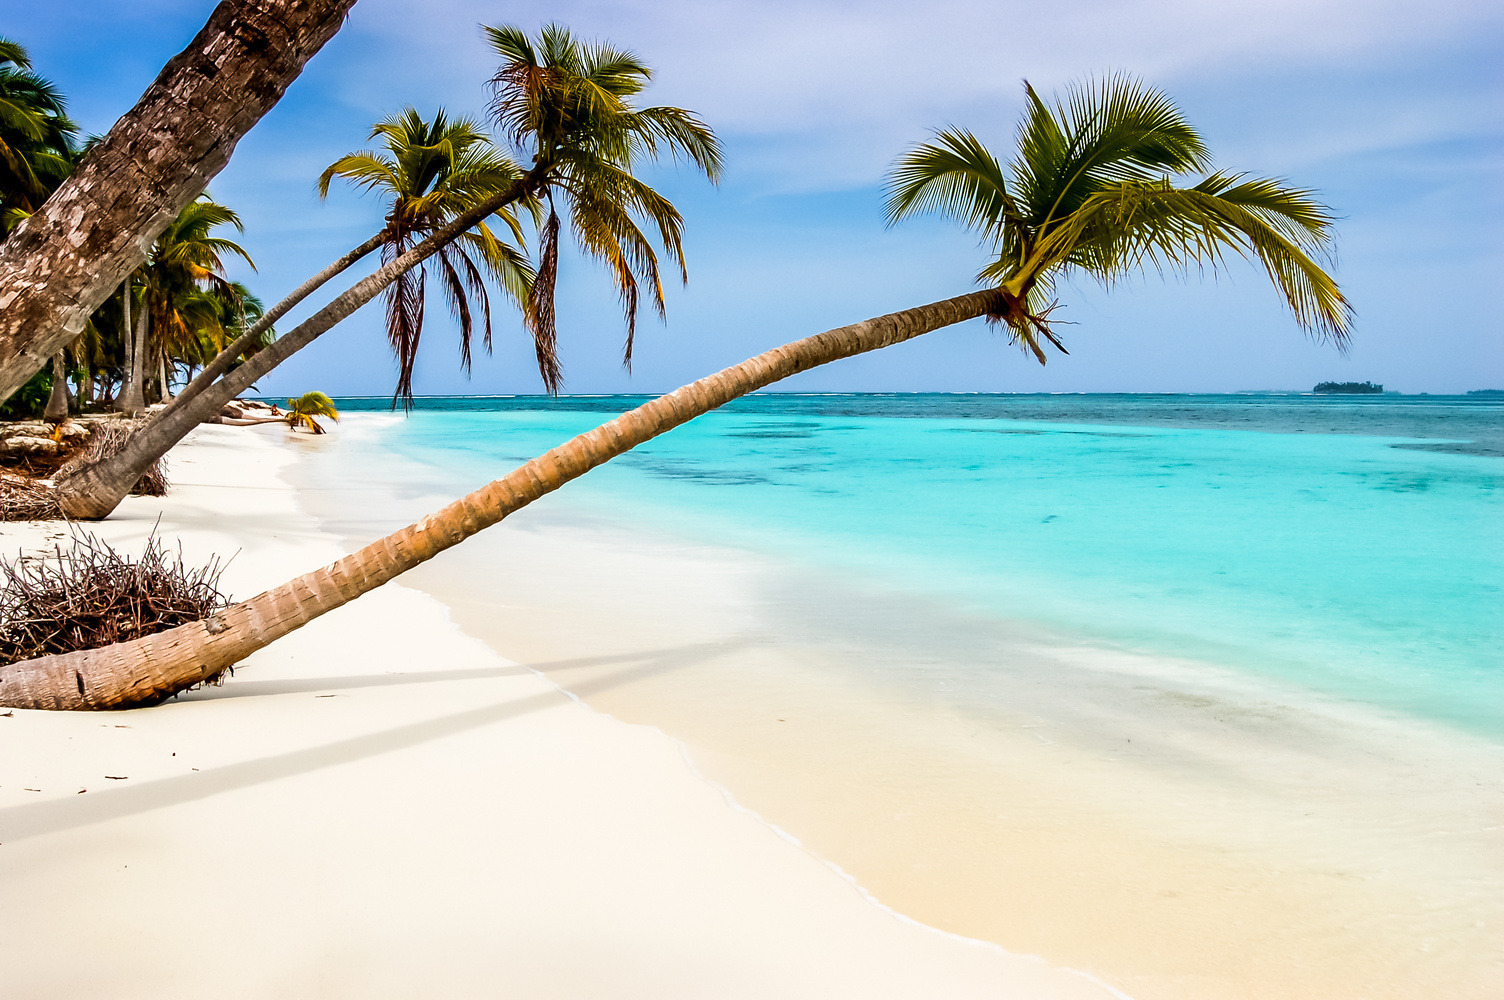 Paradise beach on Caribbean island